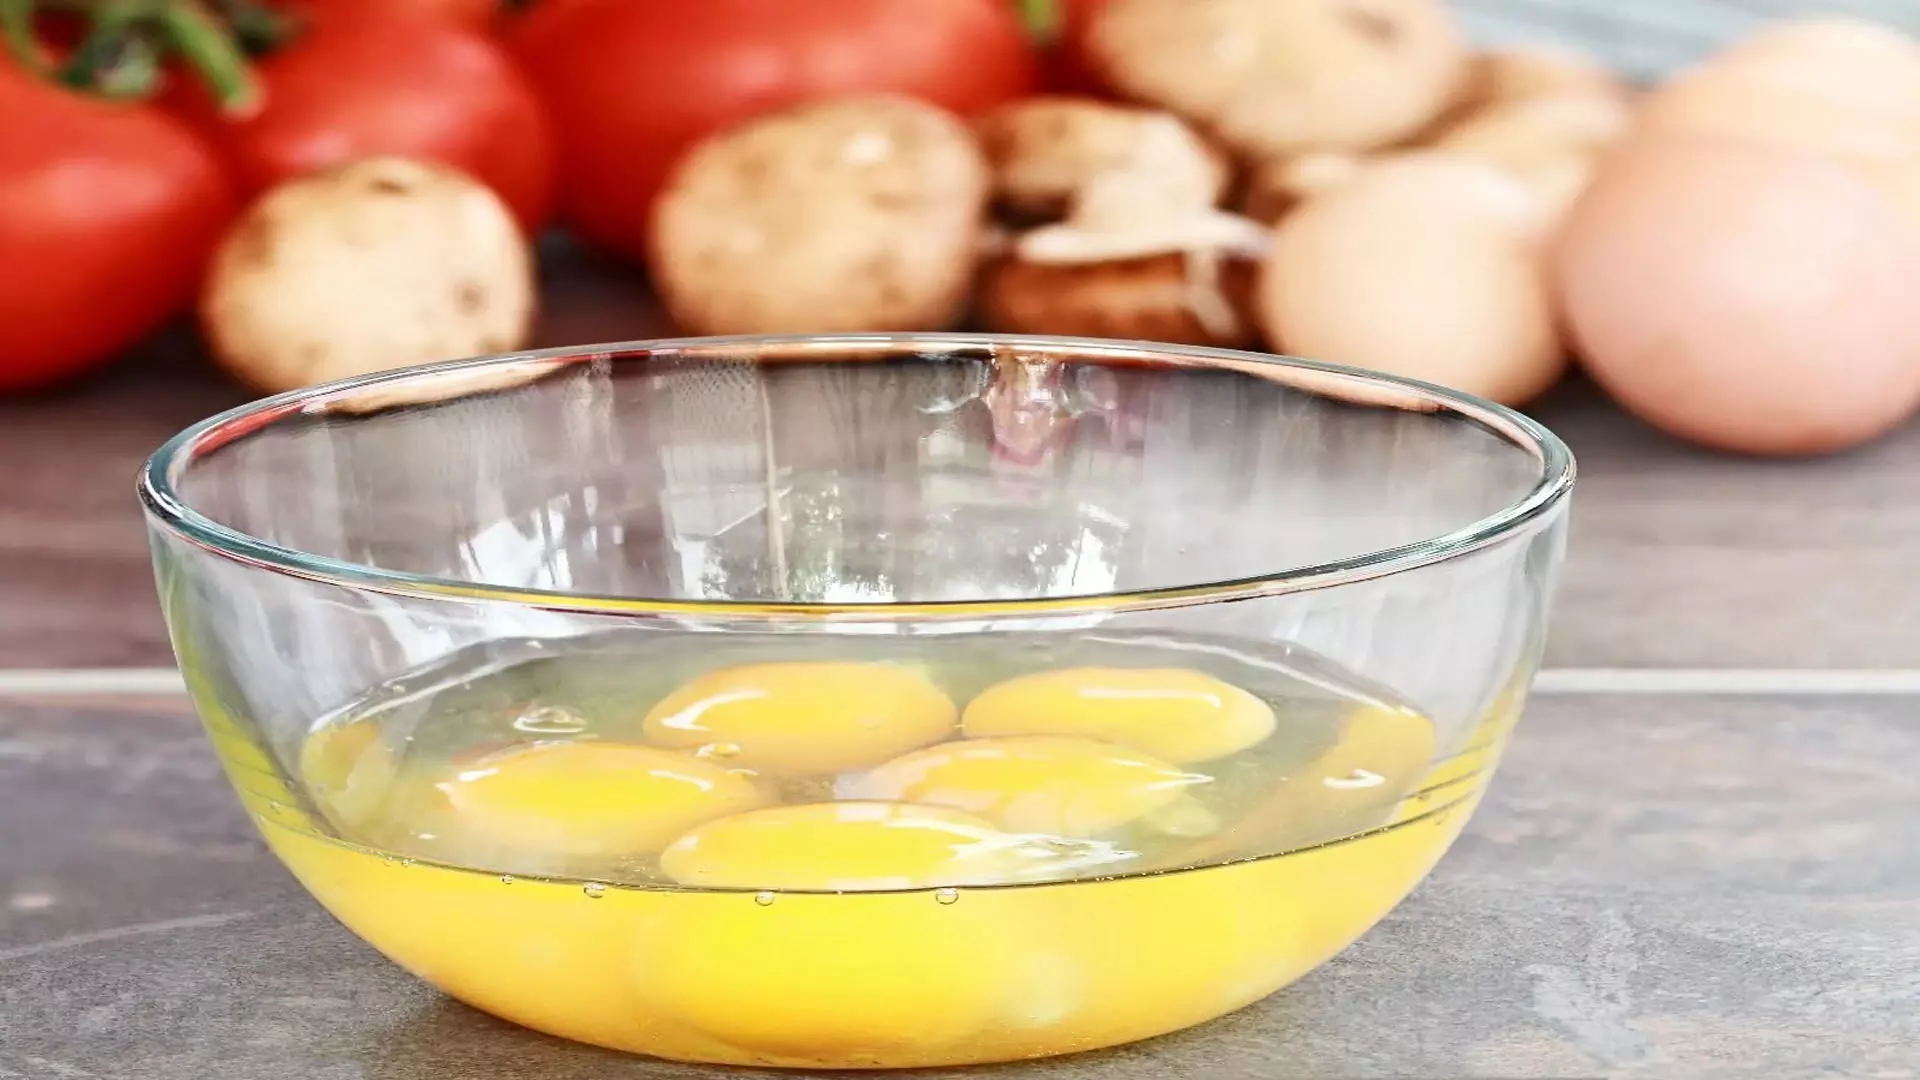 Eggs: गर्मियों में खाते हैं अंडे तो रखें इन बातों का ध्यान